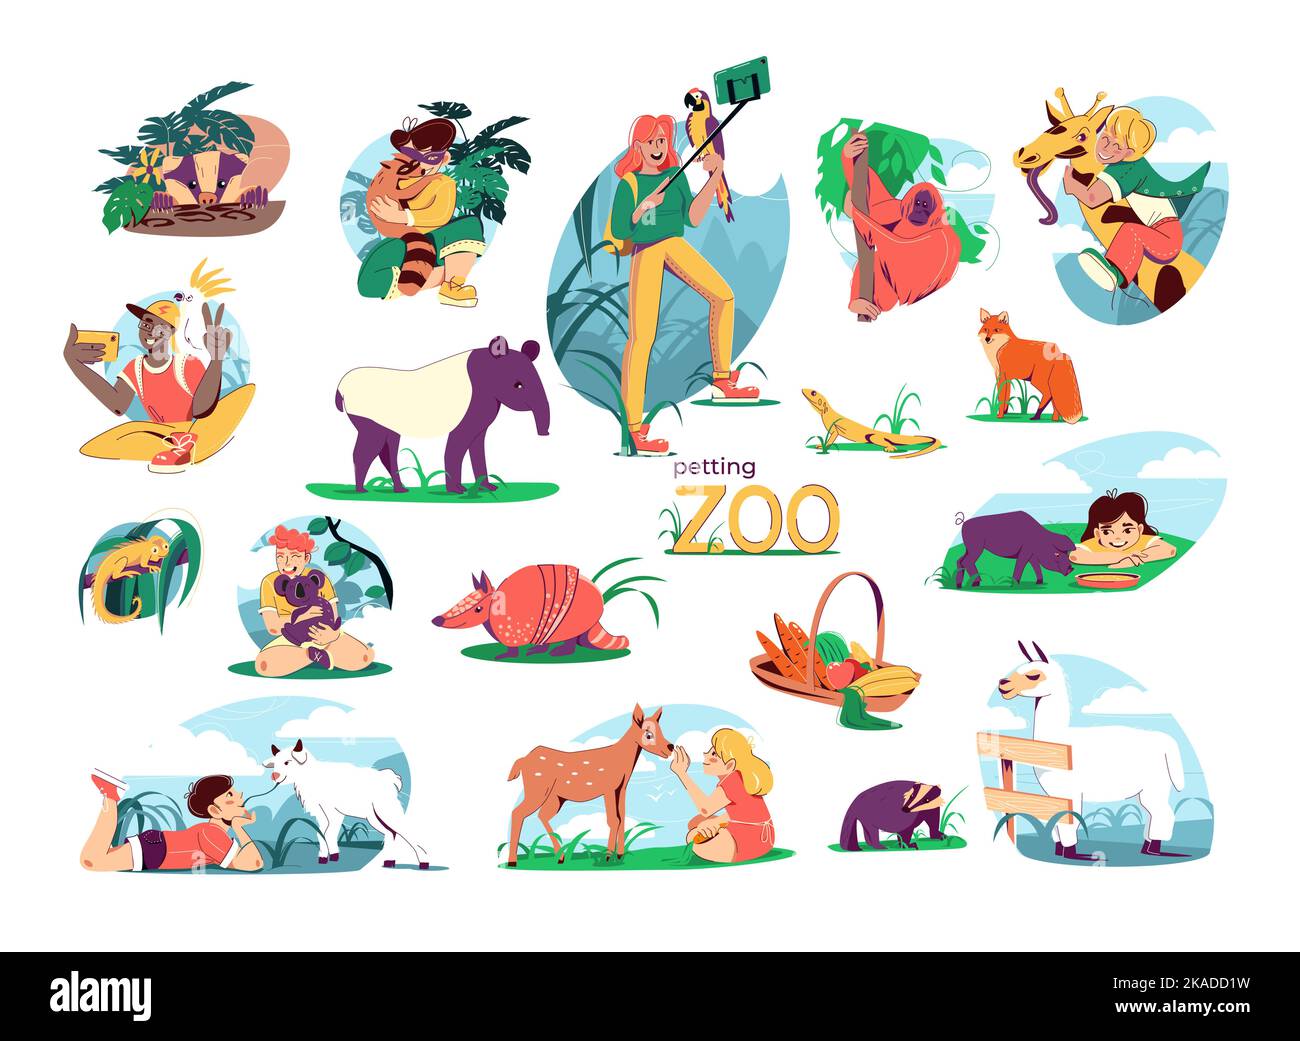 Zoológico de mascotas conjunto plano de composiciones aisladas con animales exóticos en contacto directo con personajes humanos ilustración de vectores Ilustración del Vector